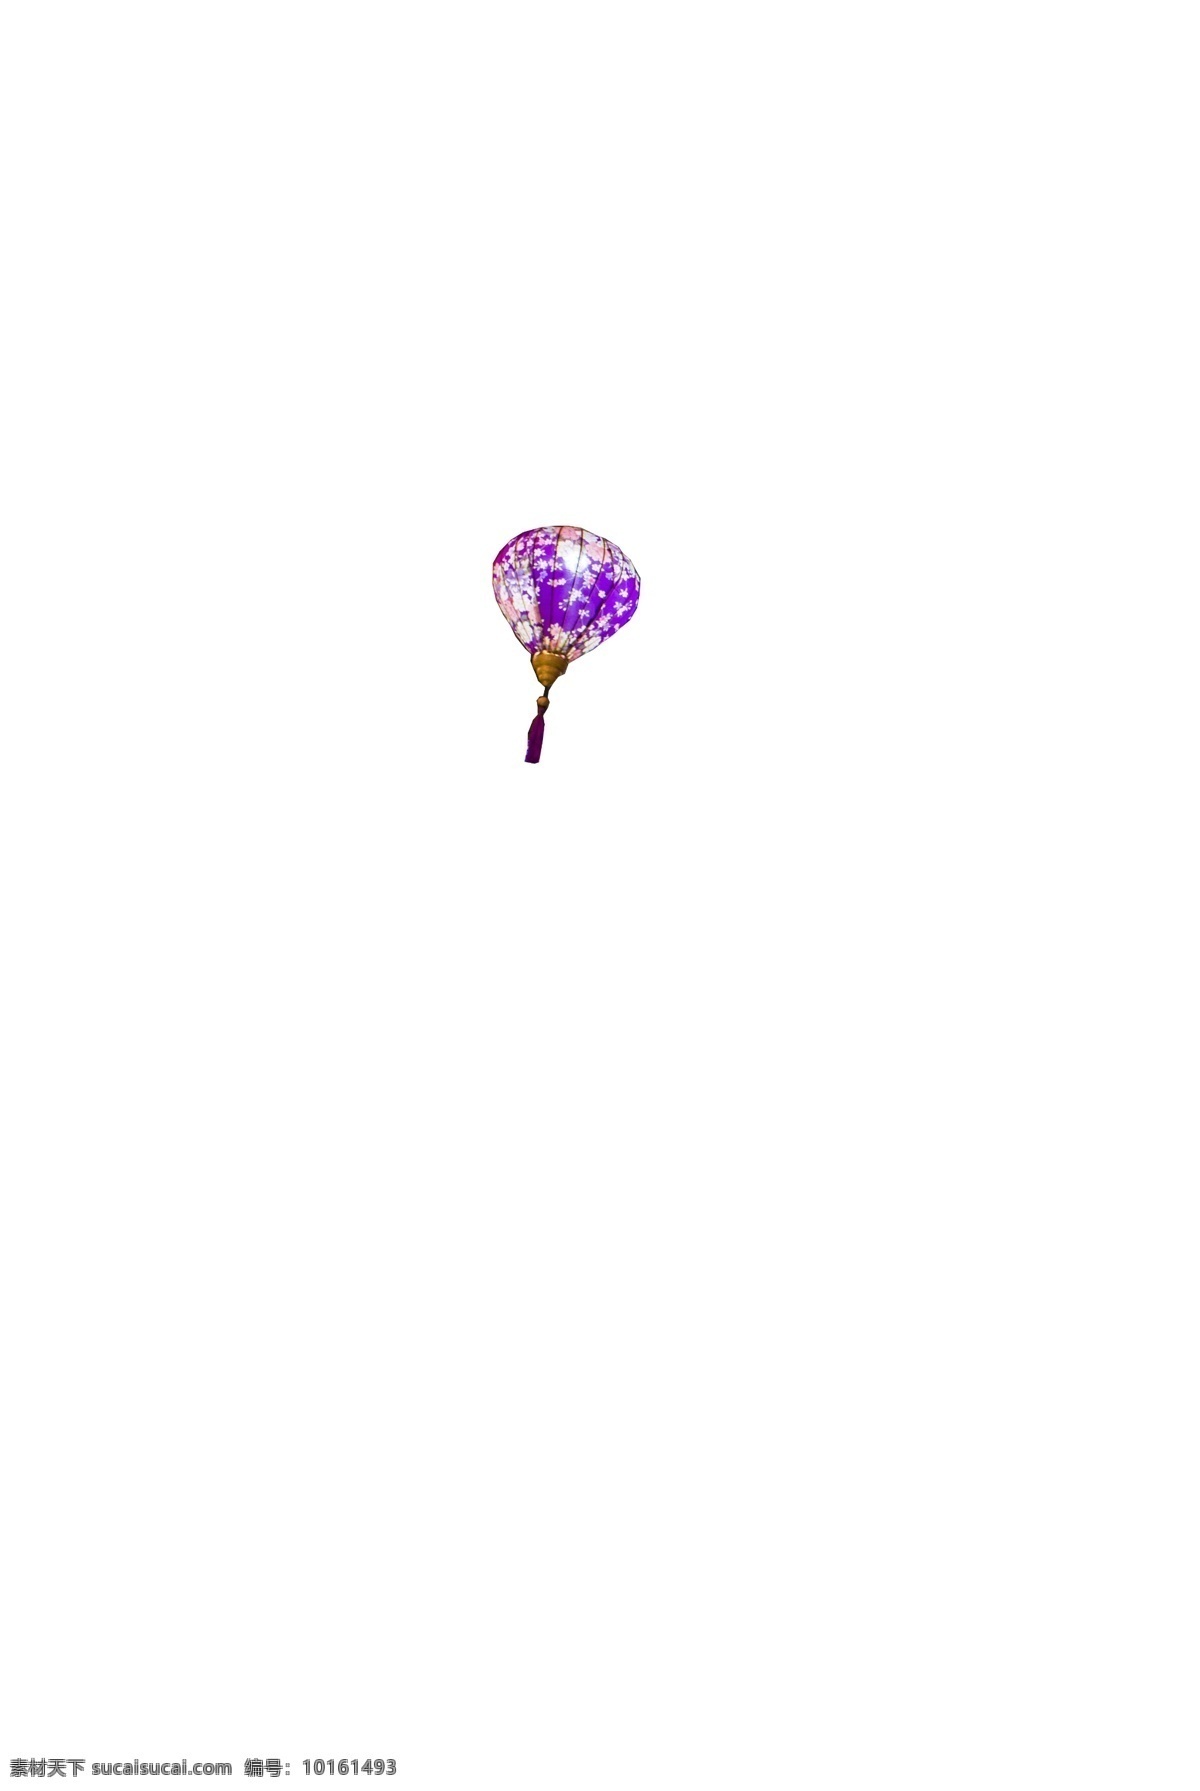 2019 节日 装扮 悬挂 式 彩色 气球 暖色灯光 彩色气球 炫彩装扮 多彩缤纷装饰 夜空点缀 色彩长廊